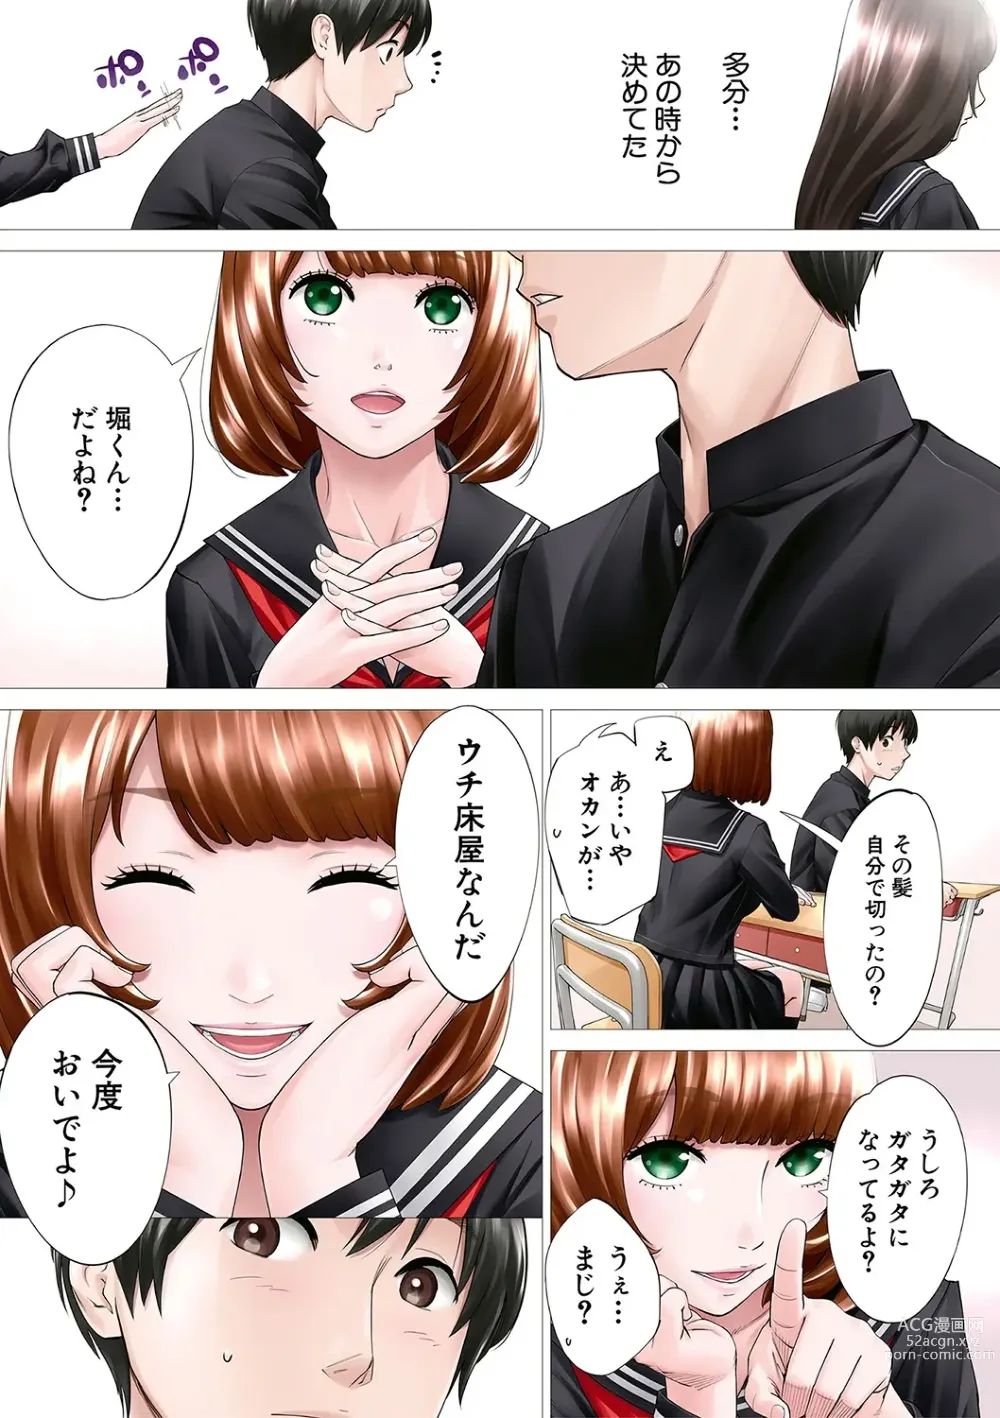 Page 6 of manga Chitose